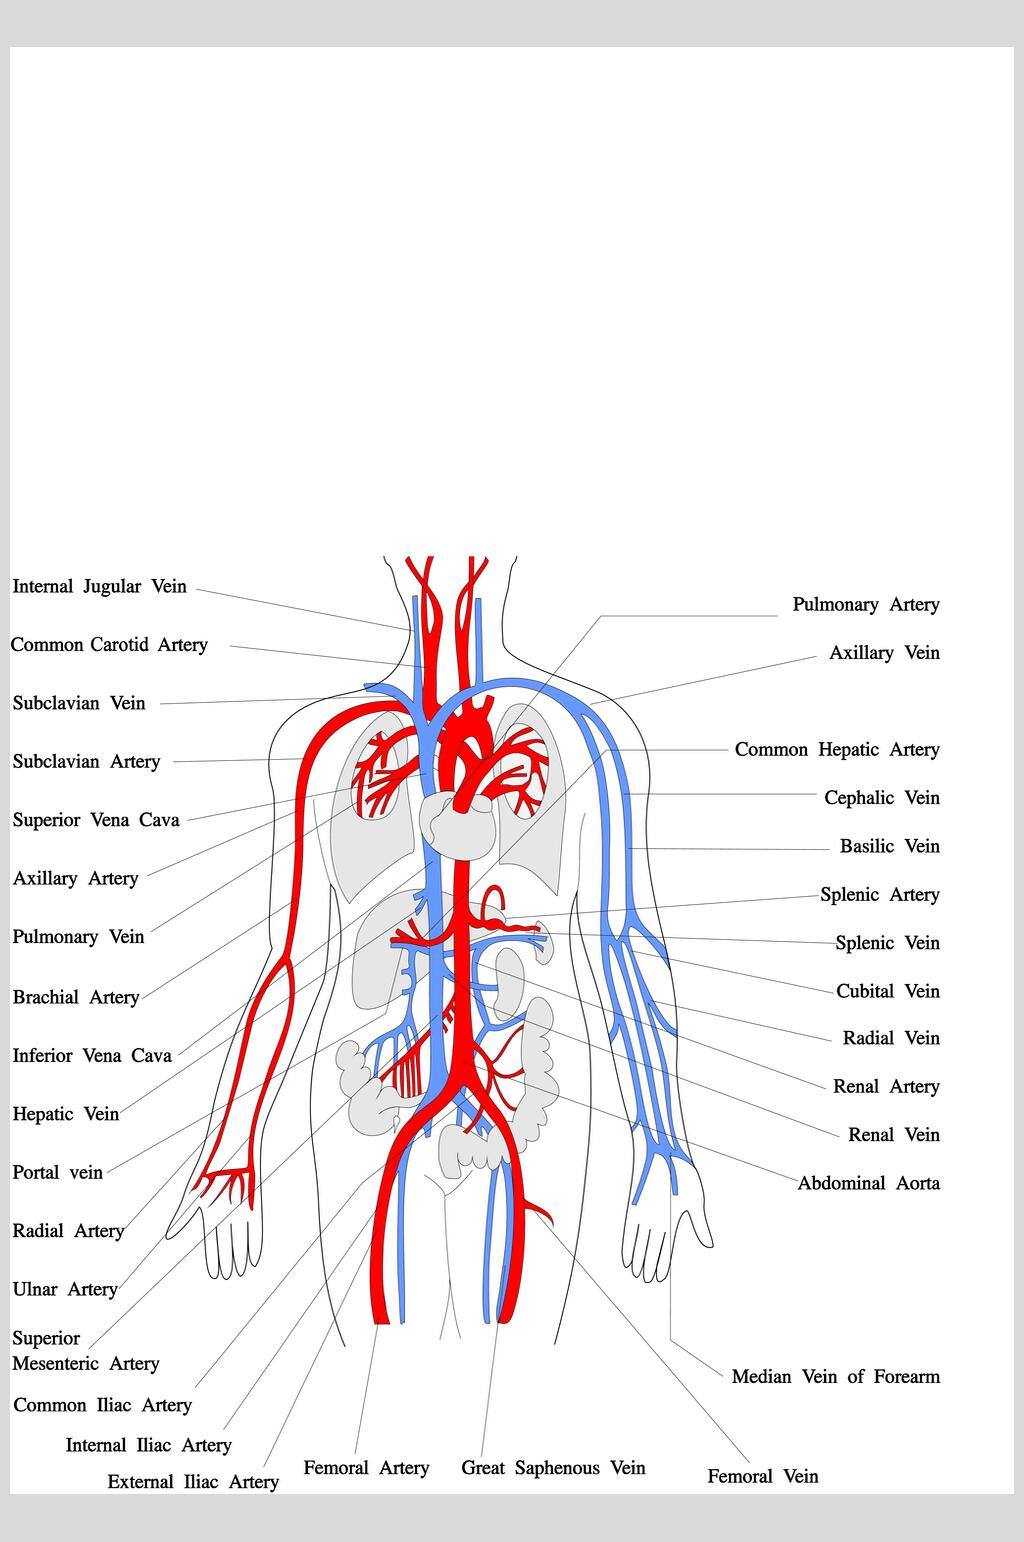 全身动脉解剖图图片